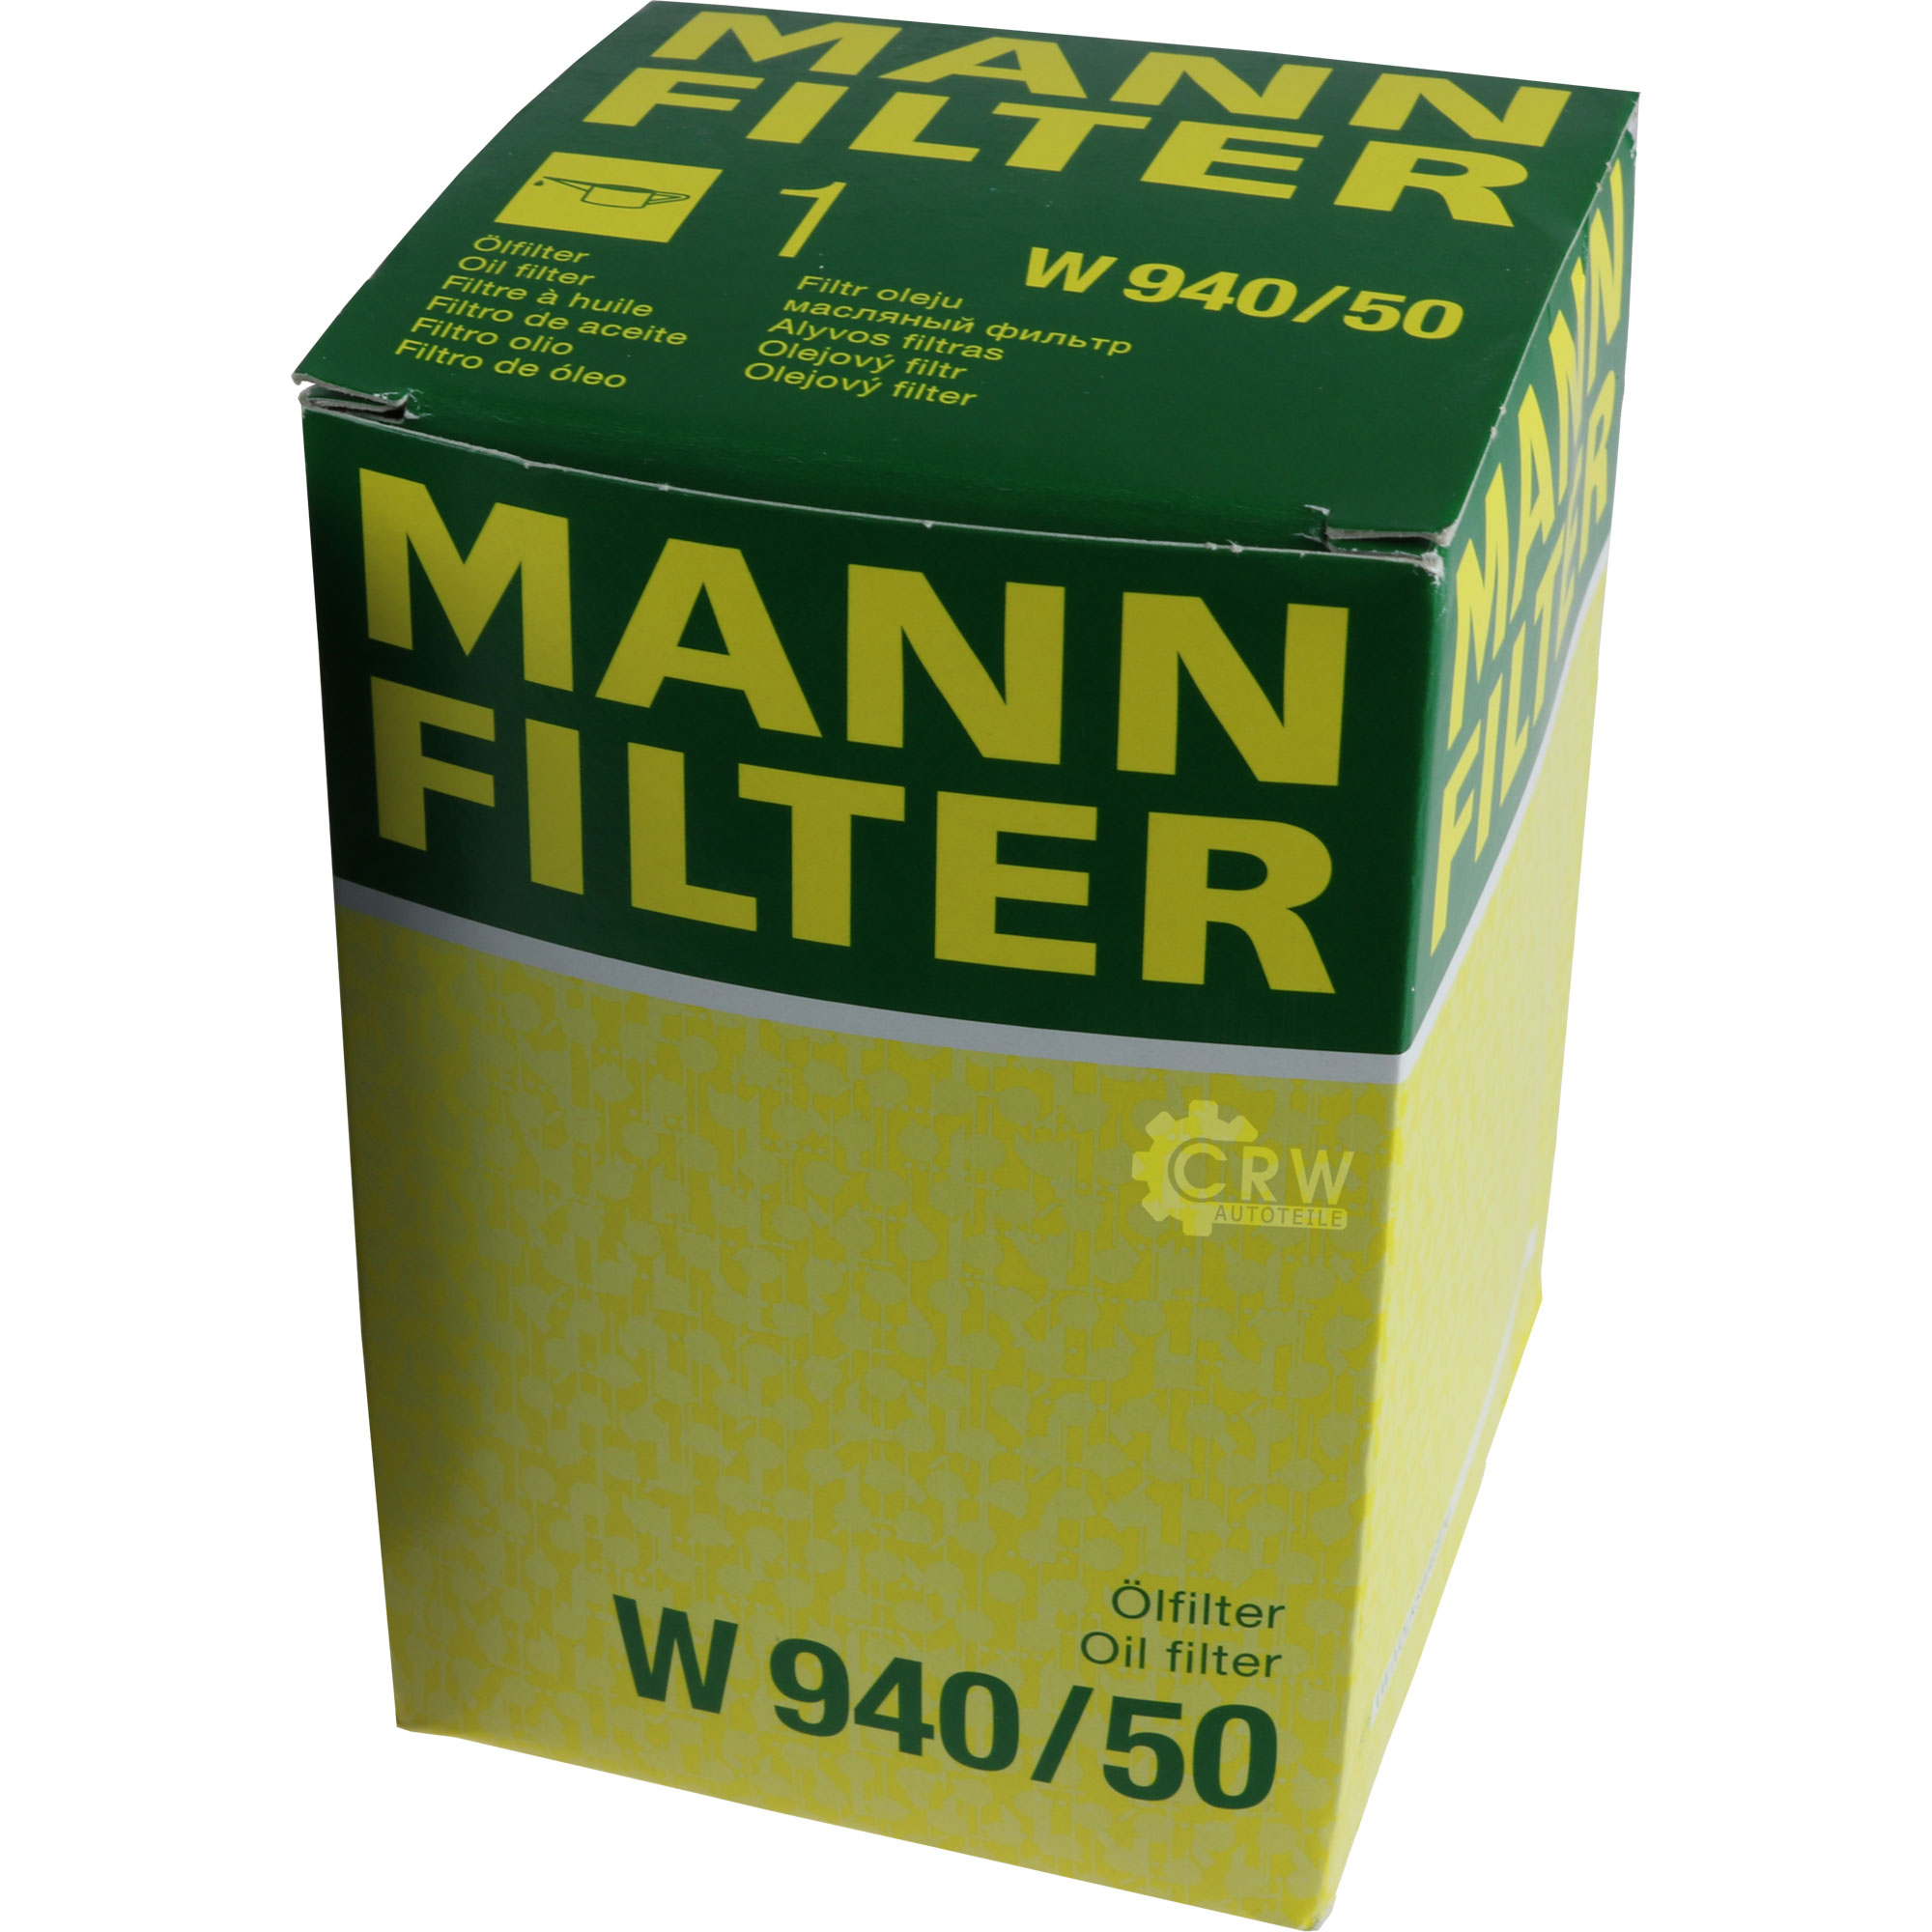 MANN-FILTER Ölfilter W 940/50 Oil Filter